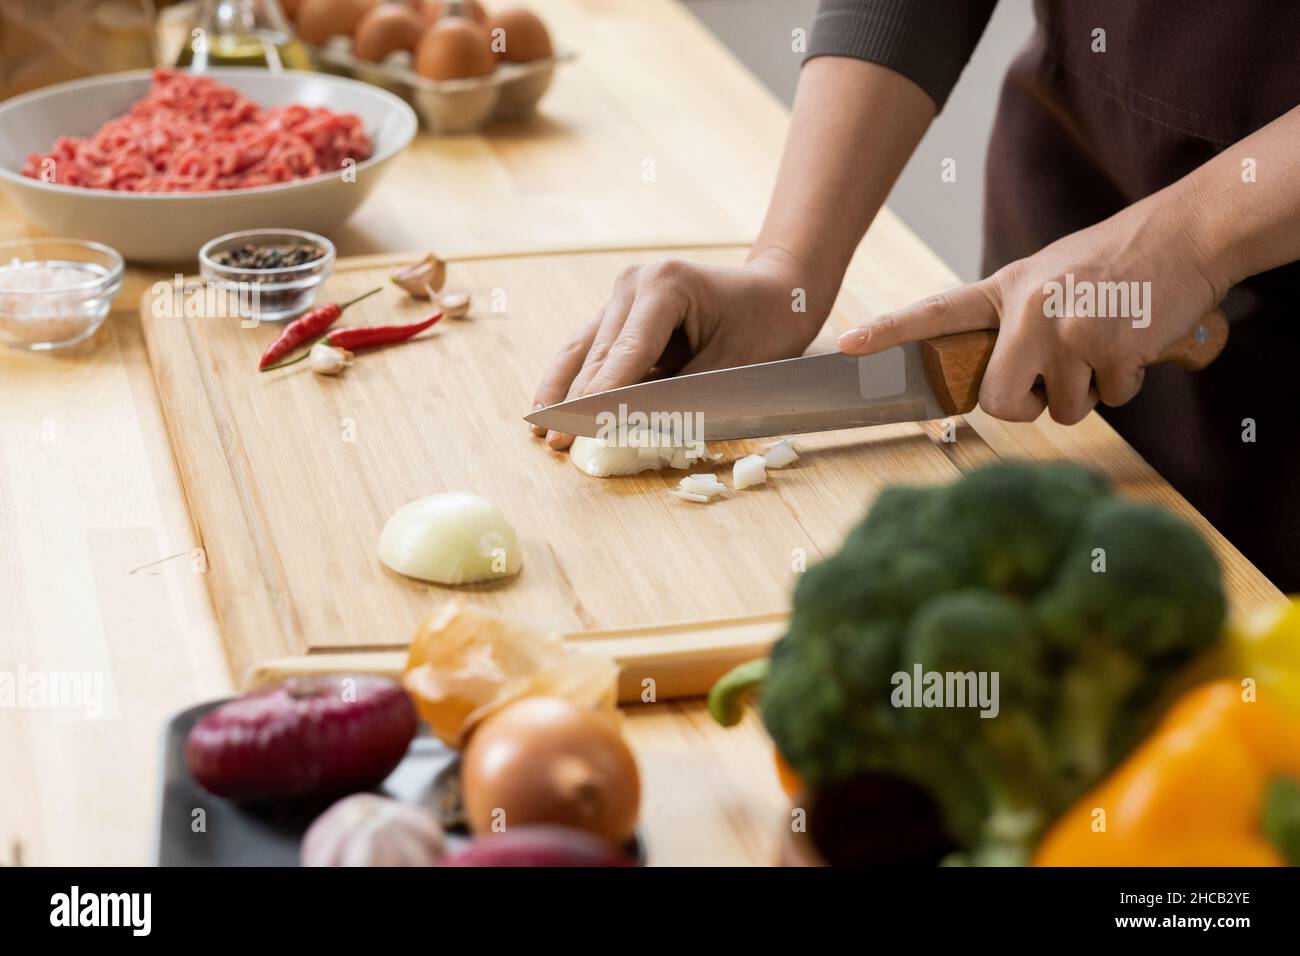 Les mains de la jeune femme coupant l'oignon brut avec un couteau de cuisine aiguisé sur une planche de bois tout en cuisinant de la nourriture Banque D'Images